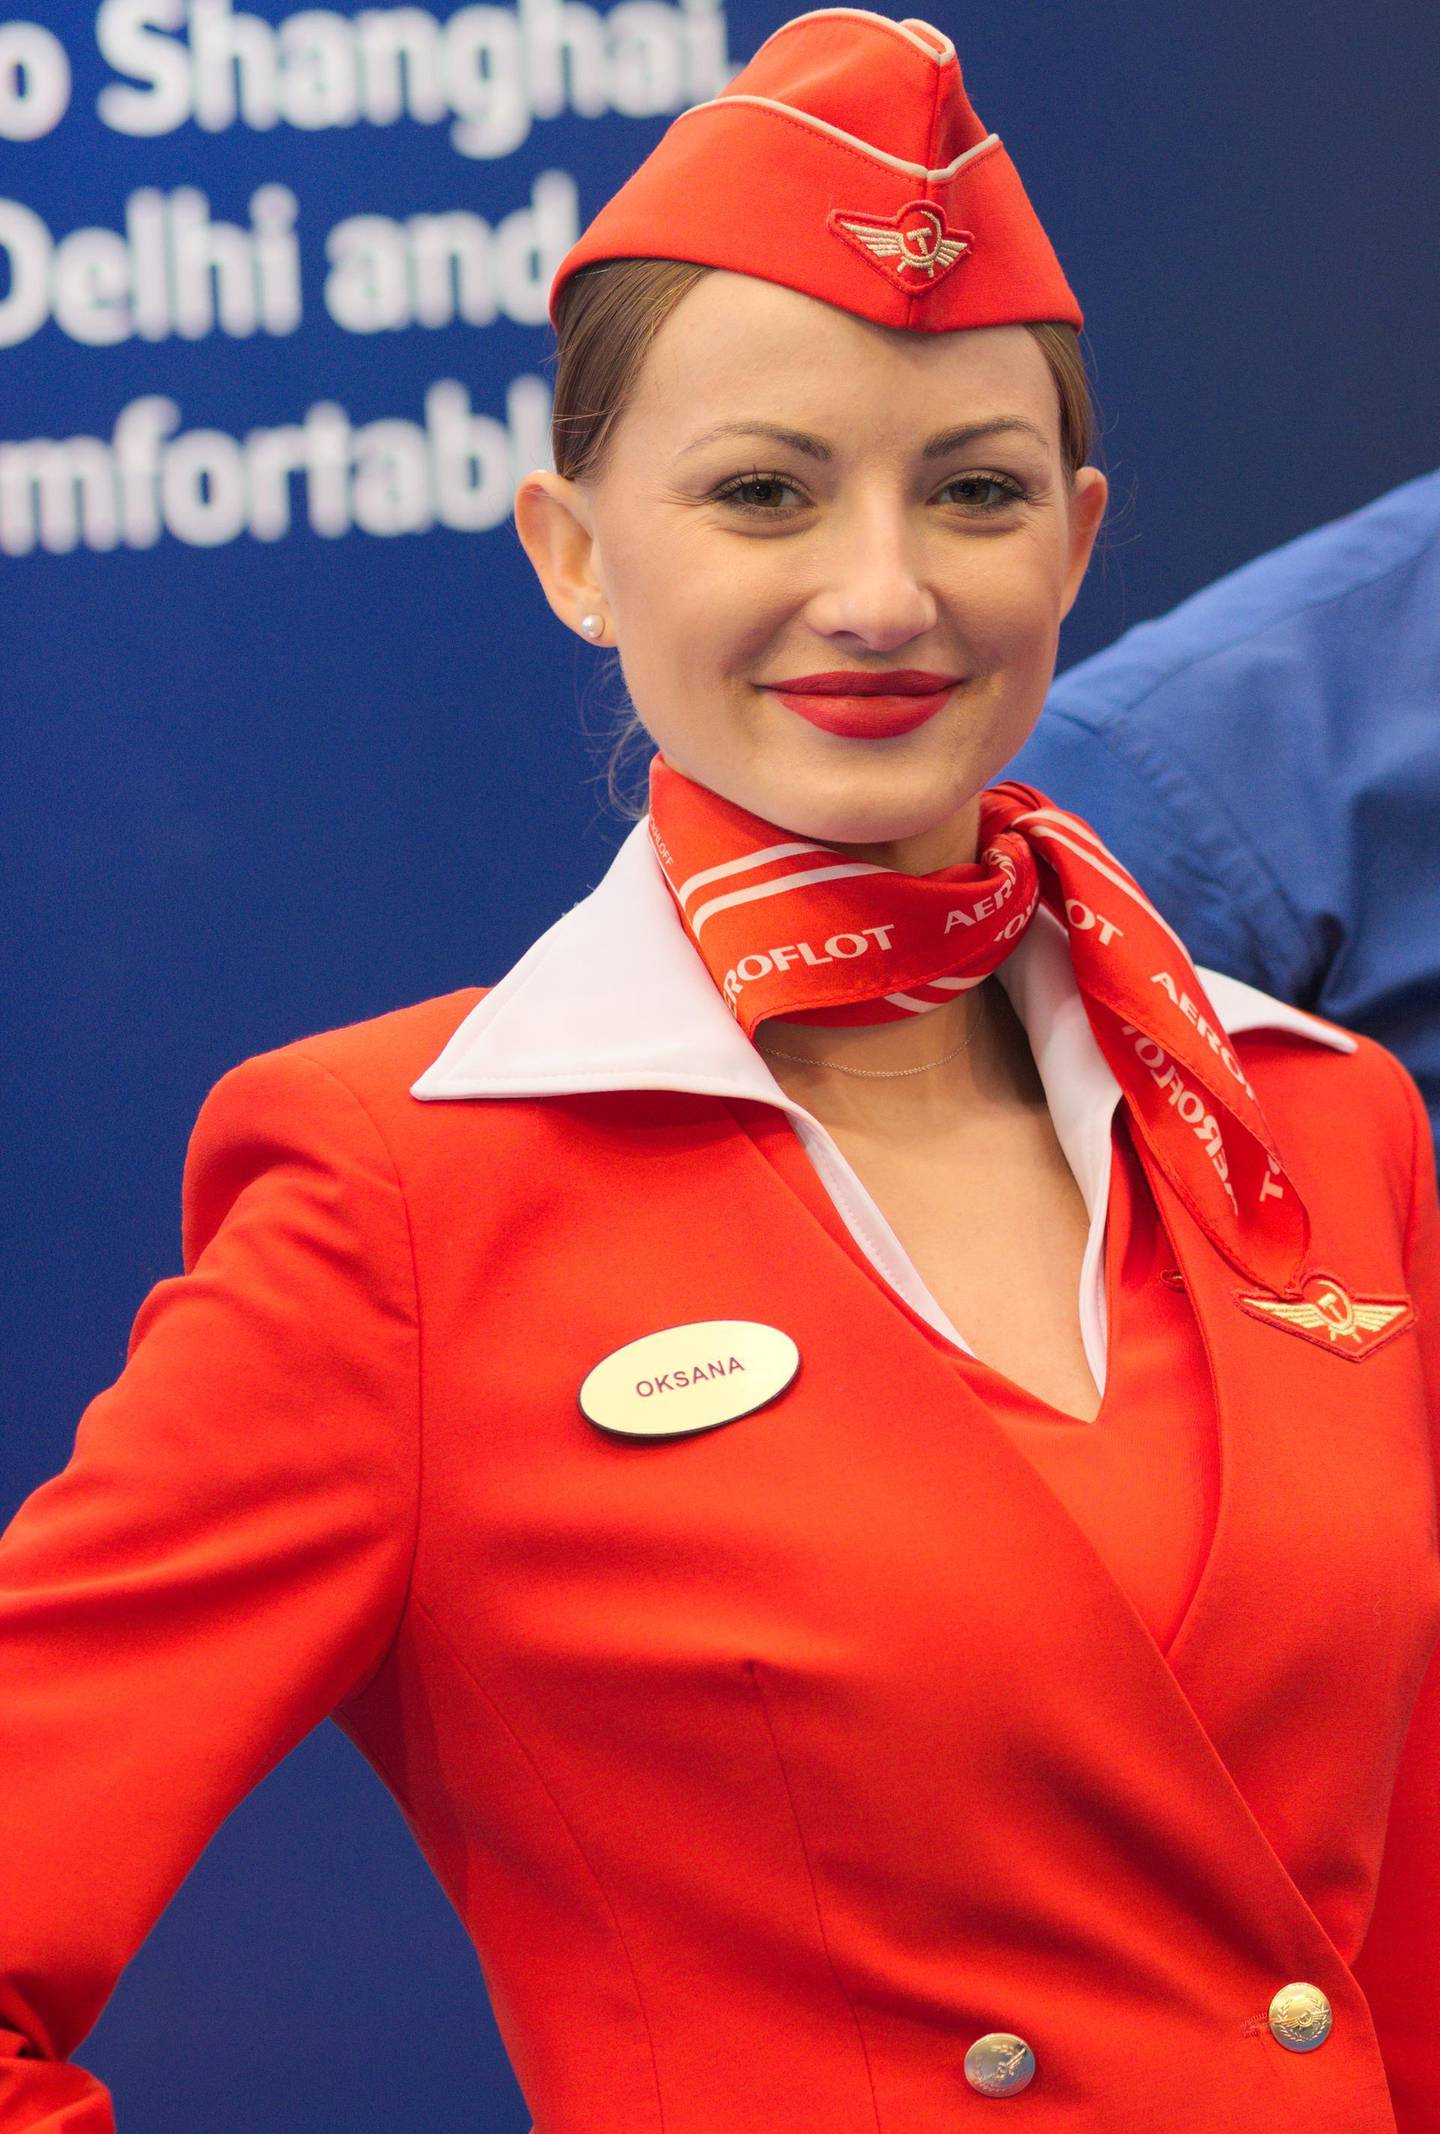 Aeroflot flight attendant